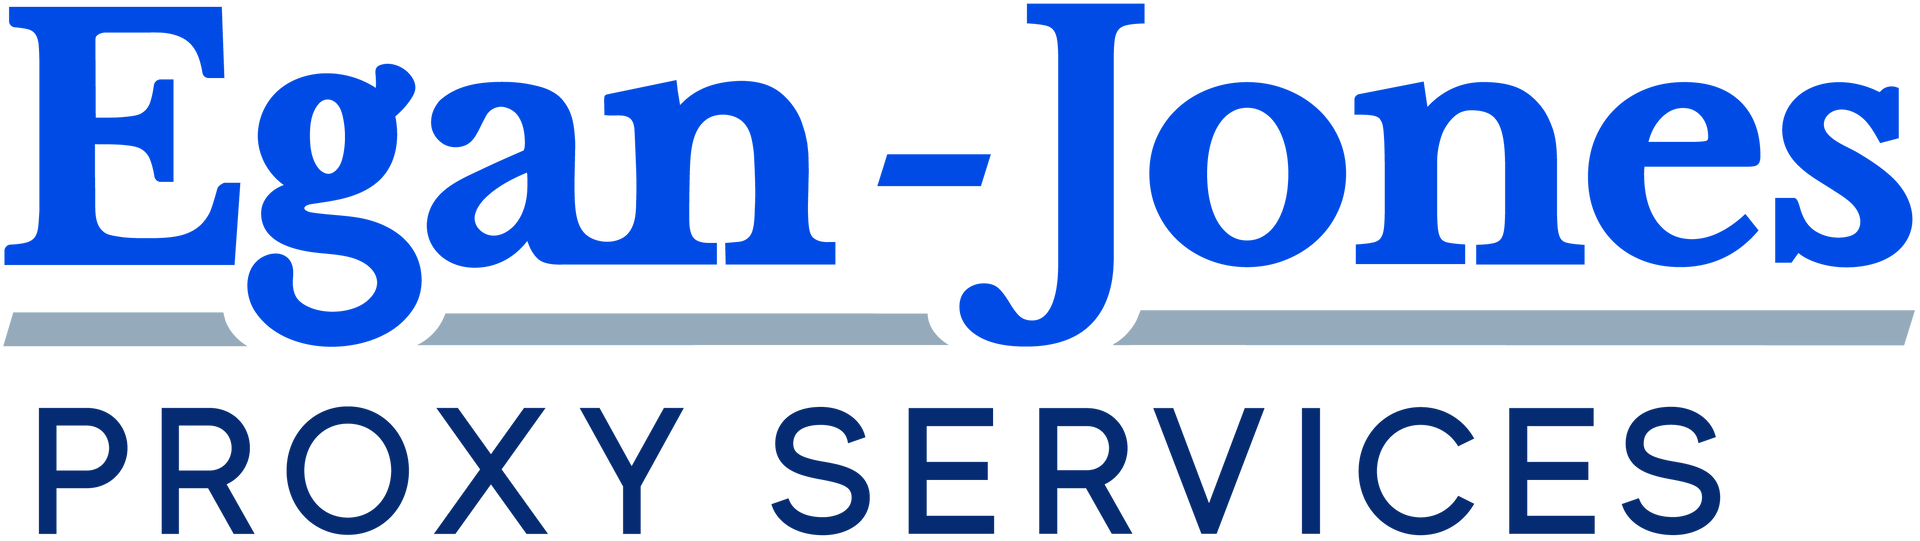 Egan-Jones Proxy Services